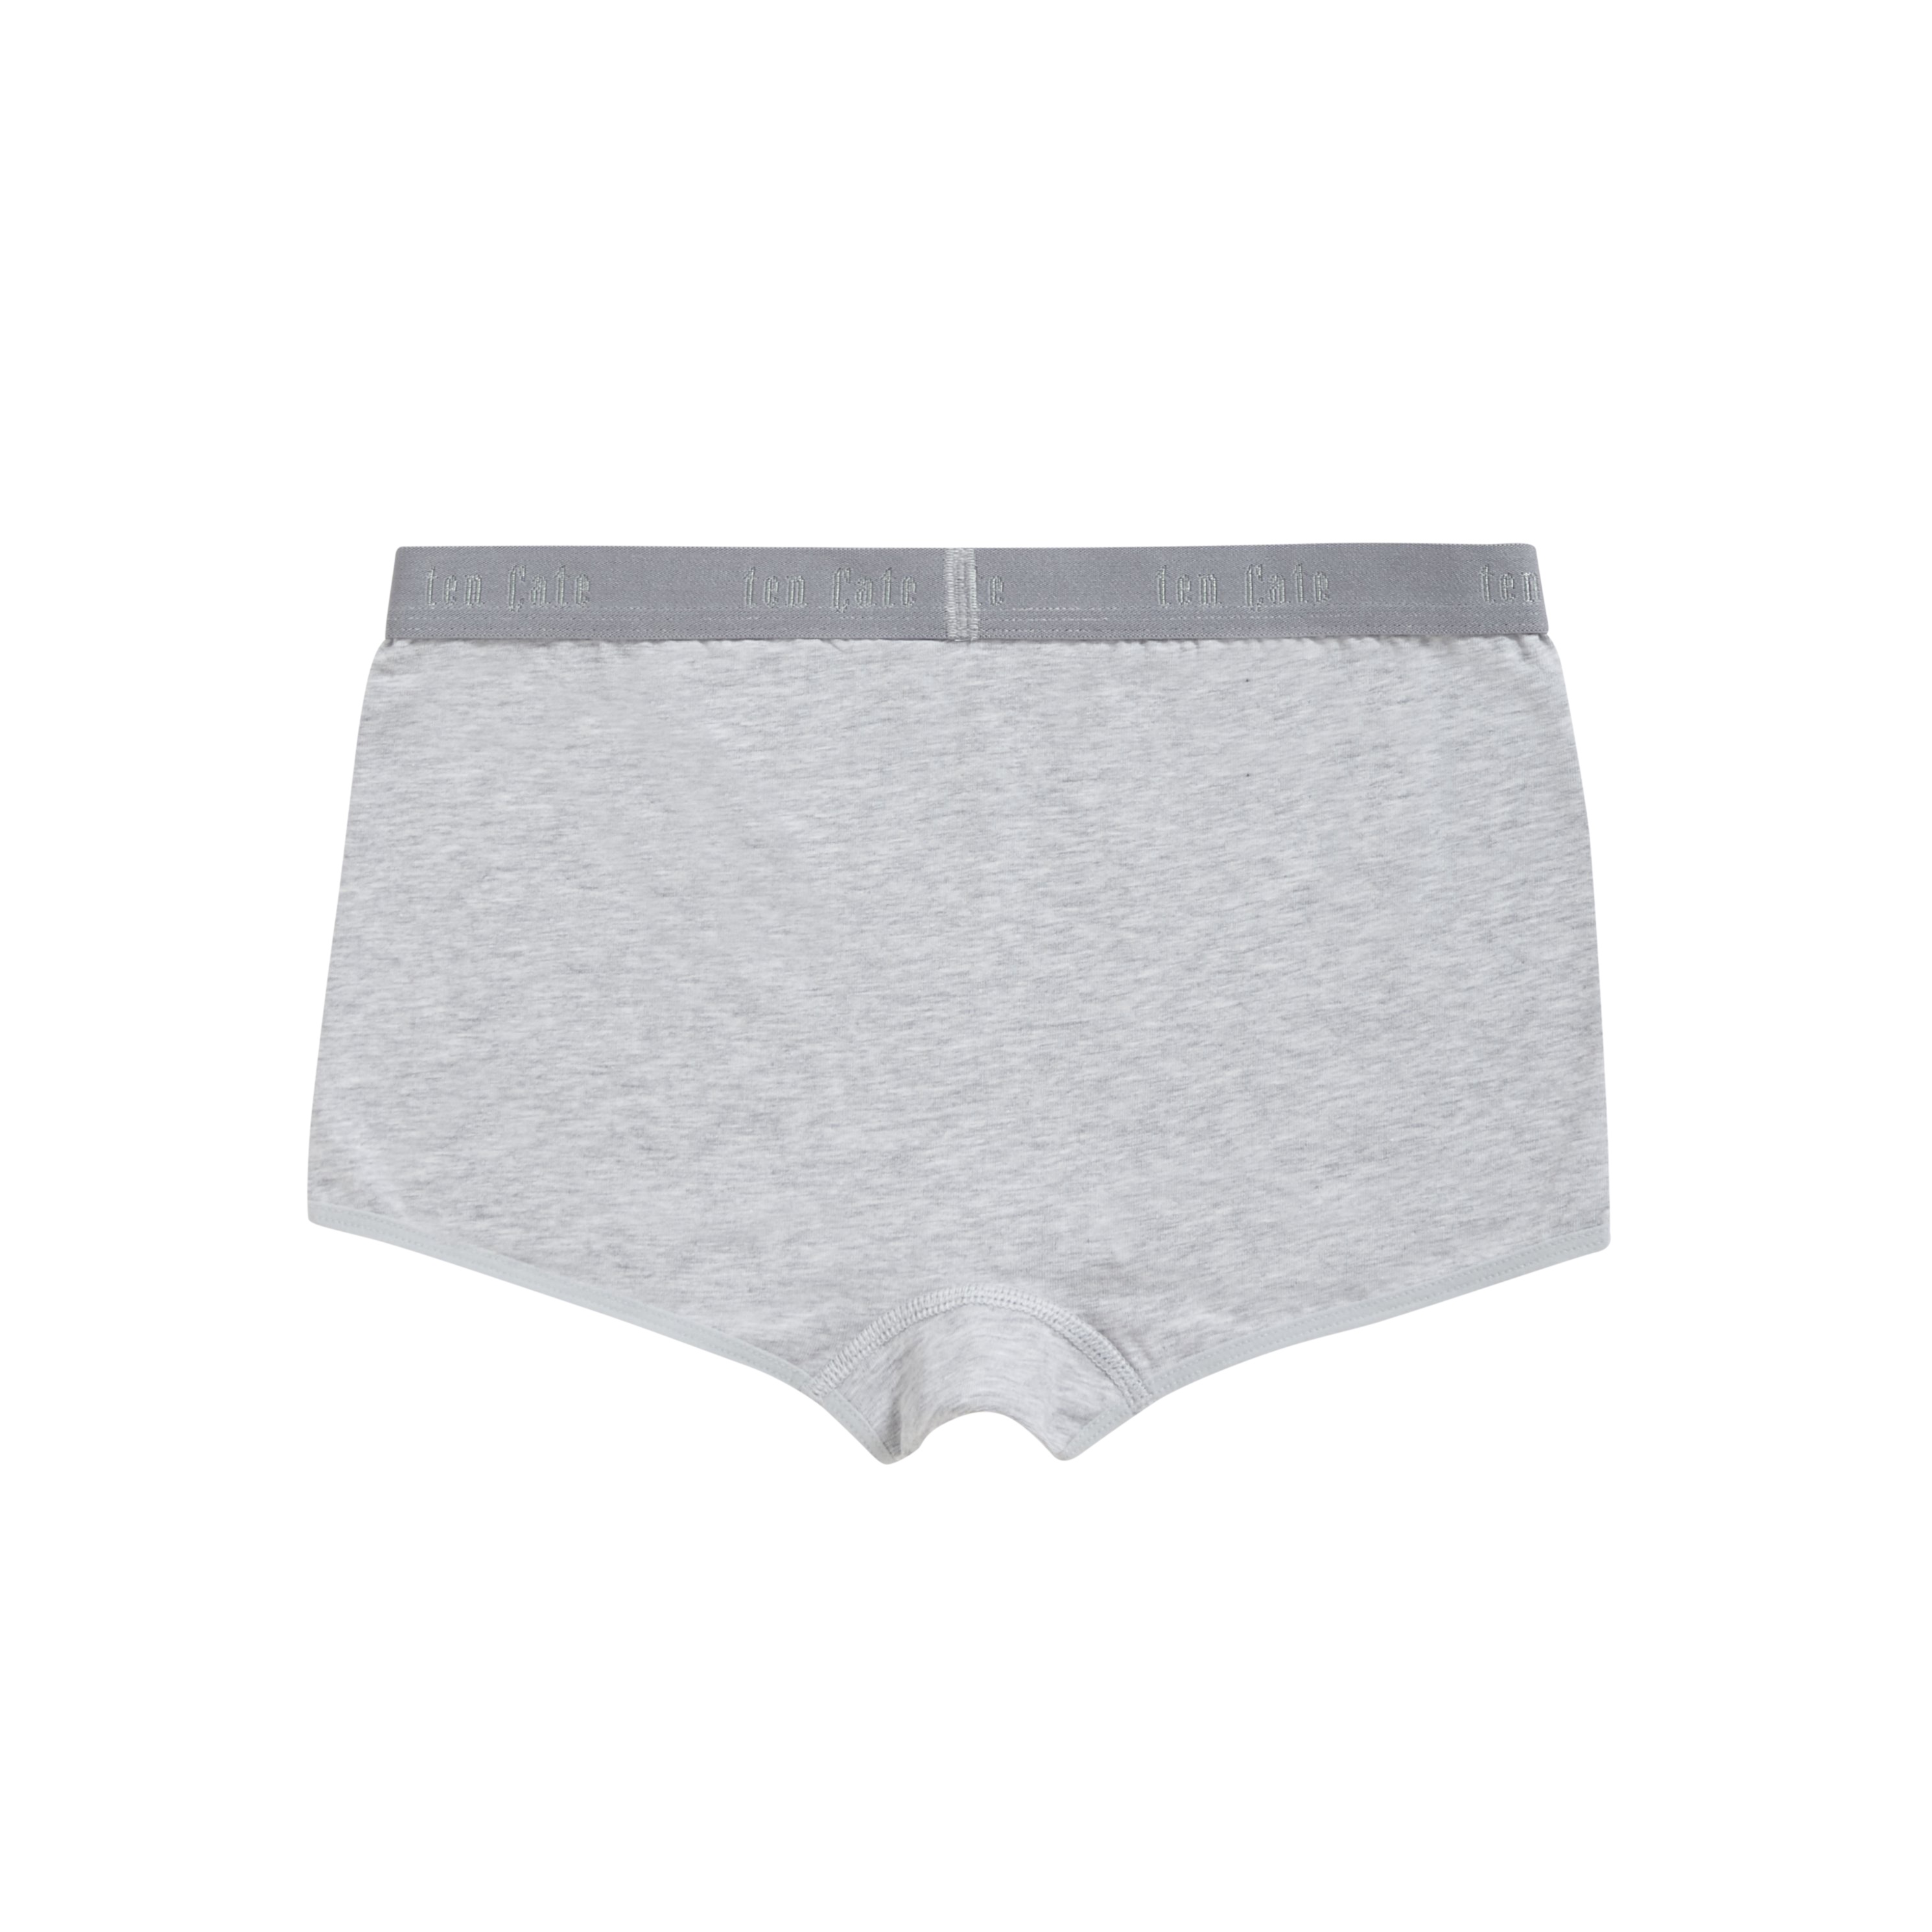 shorts grey melange 2 pack